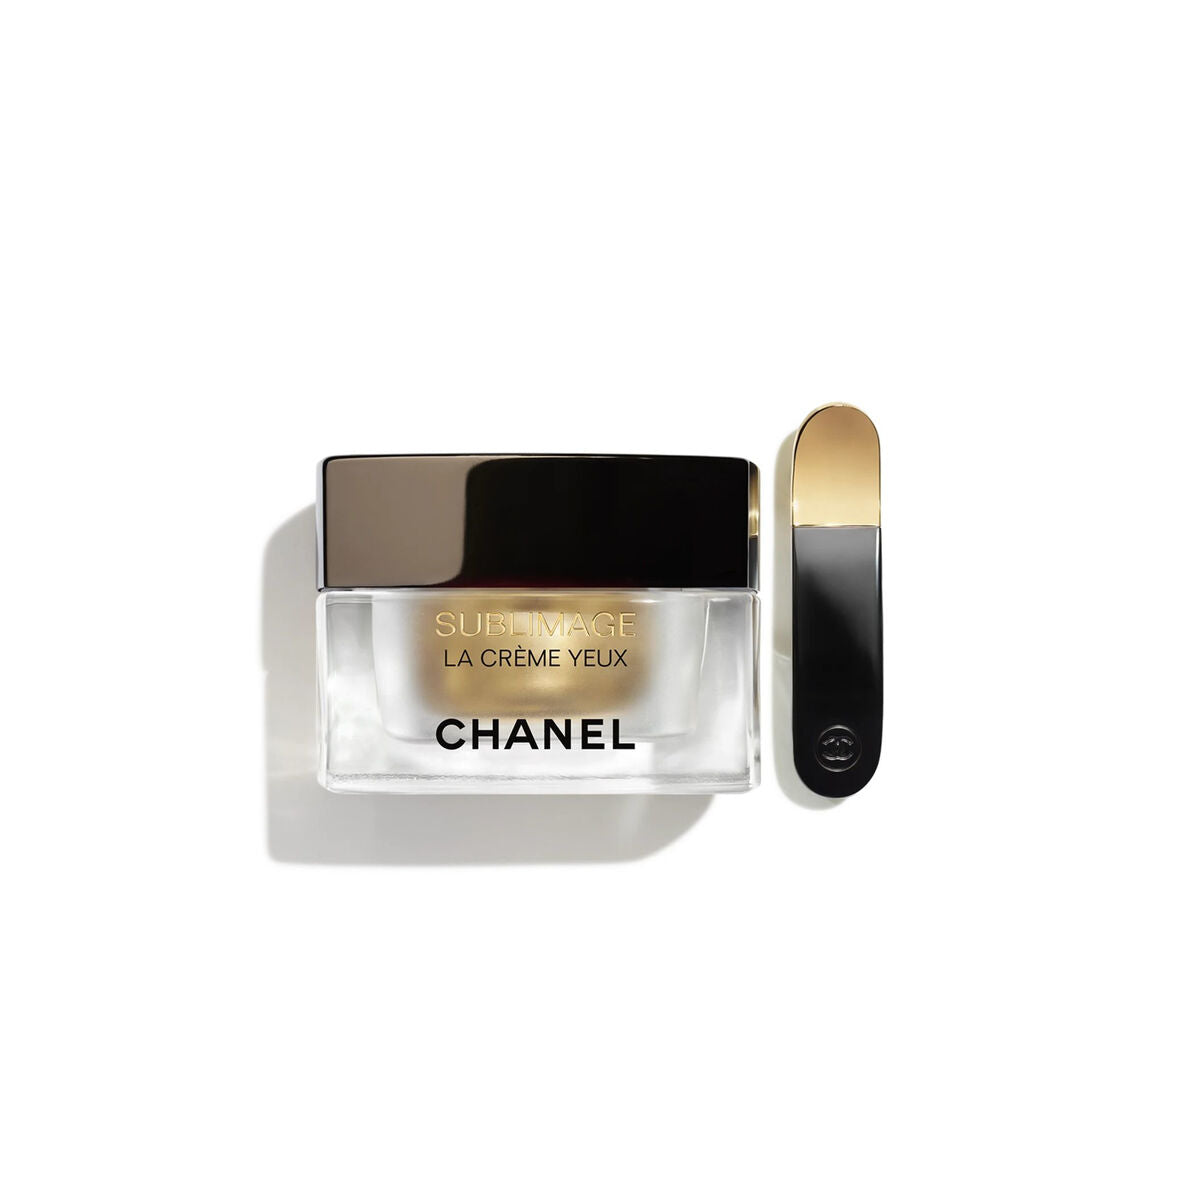 Kaufe Augenkonturcreme Chanel Sublimage 15 g bei AWK Flagship um € 231.00